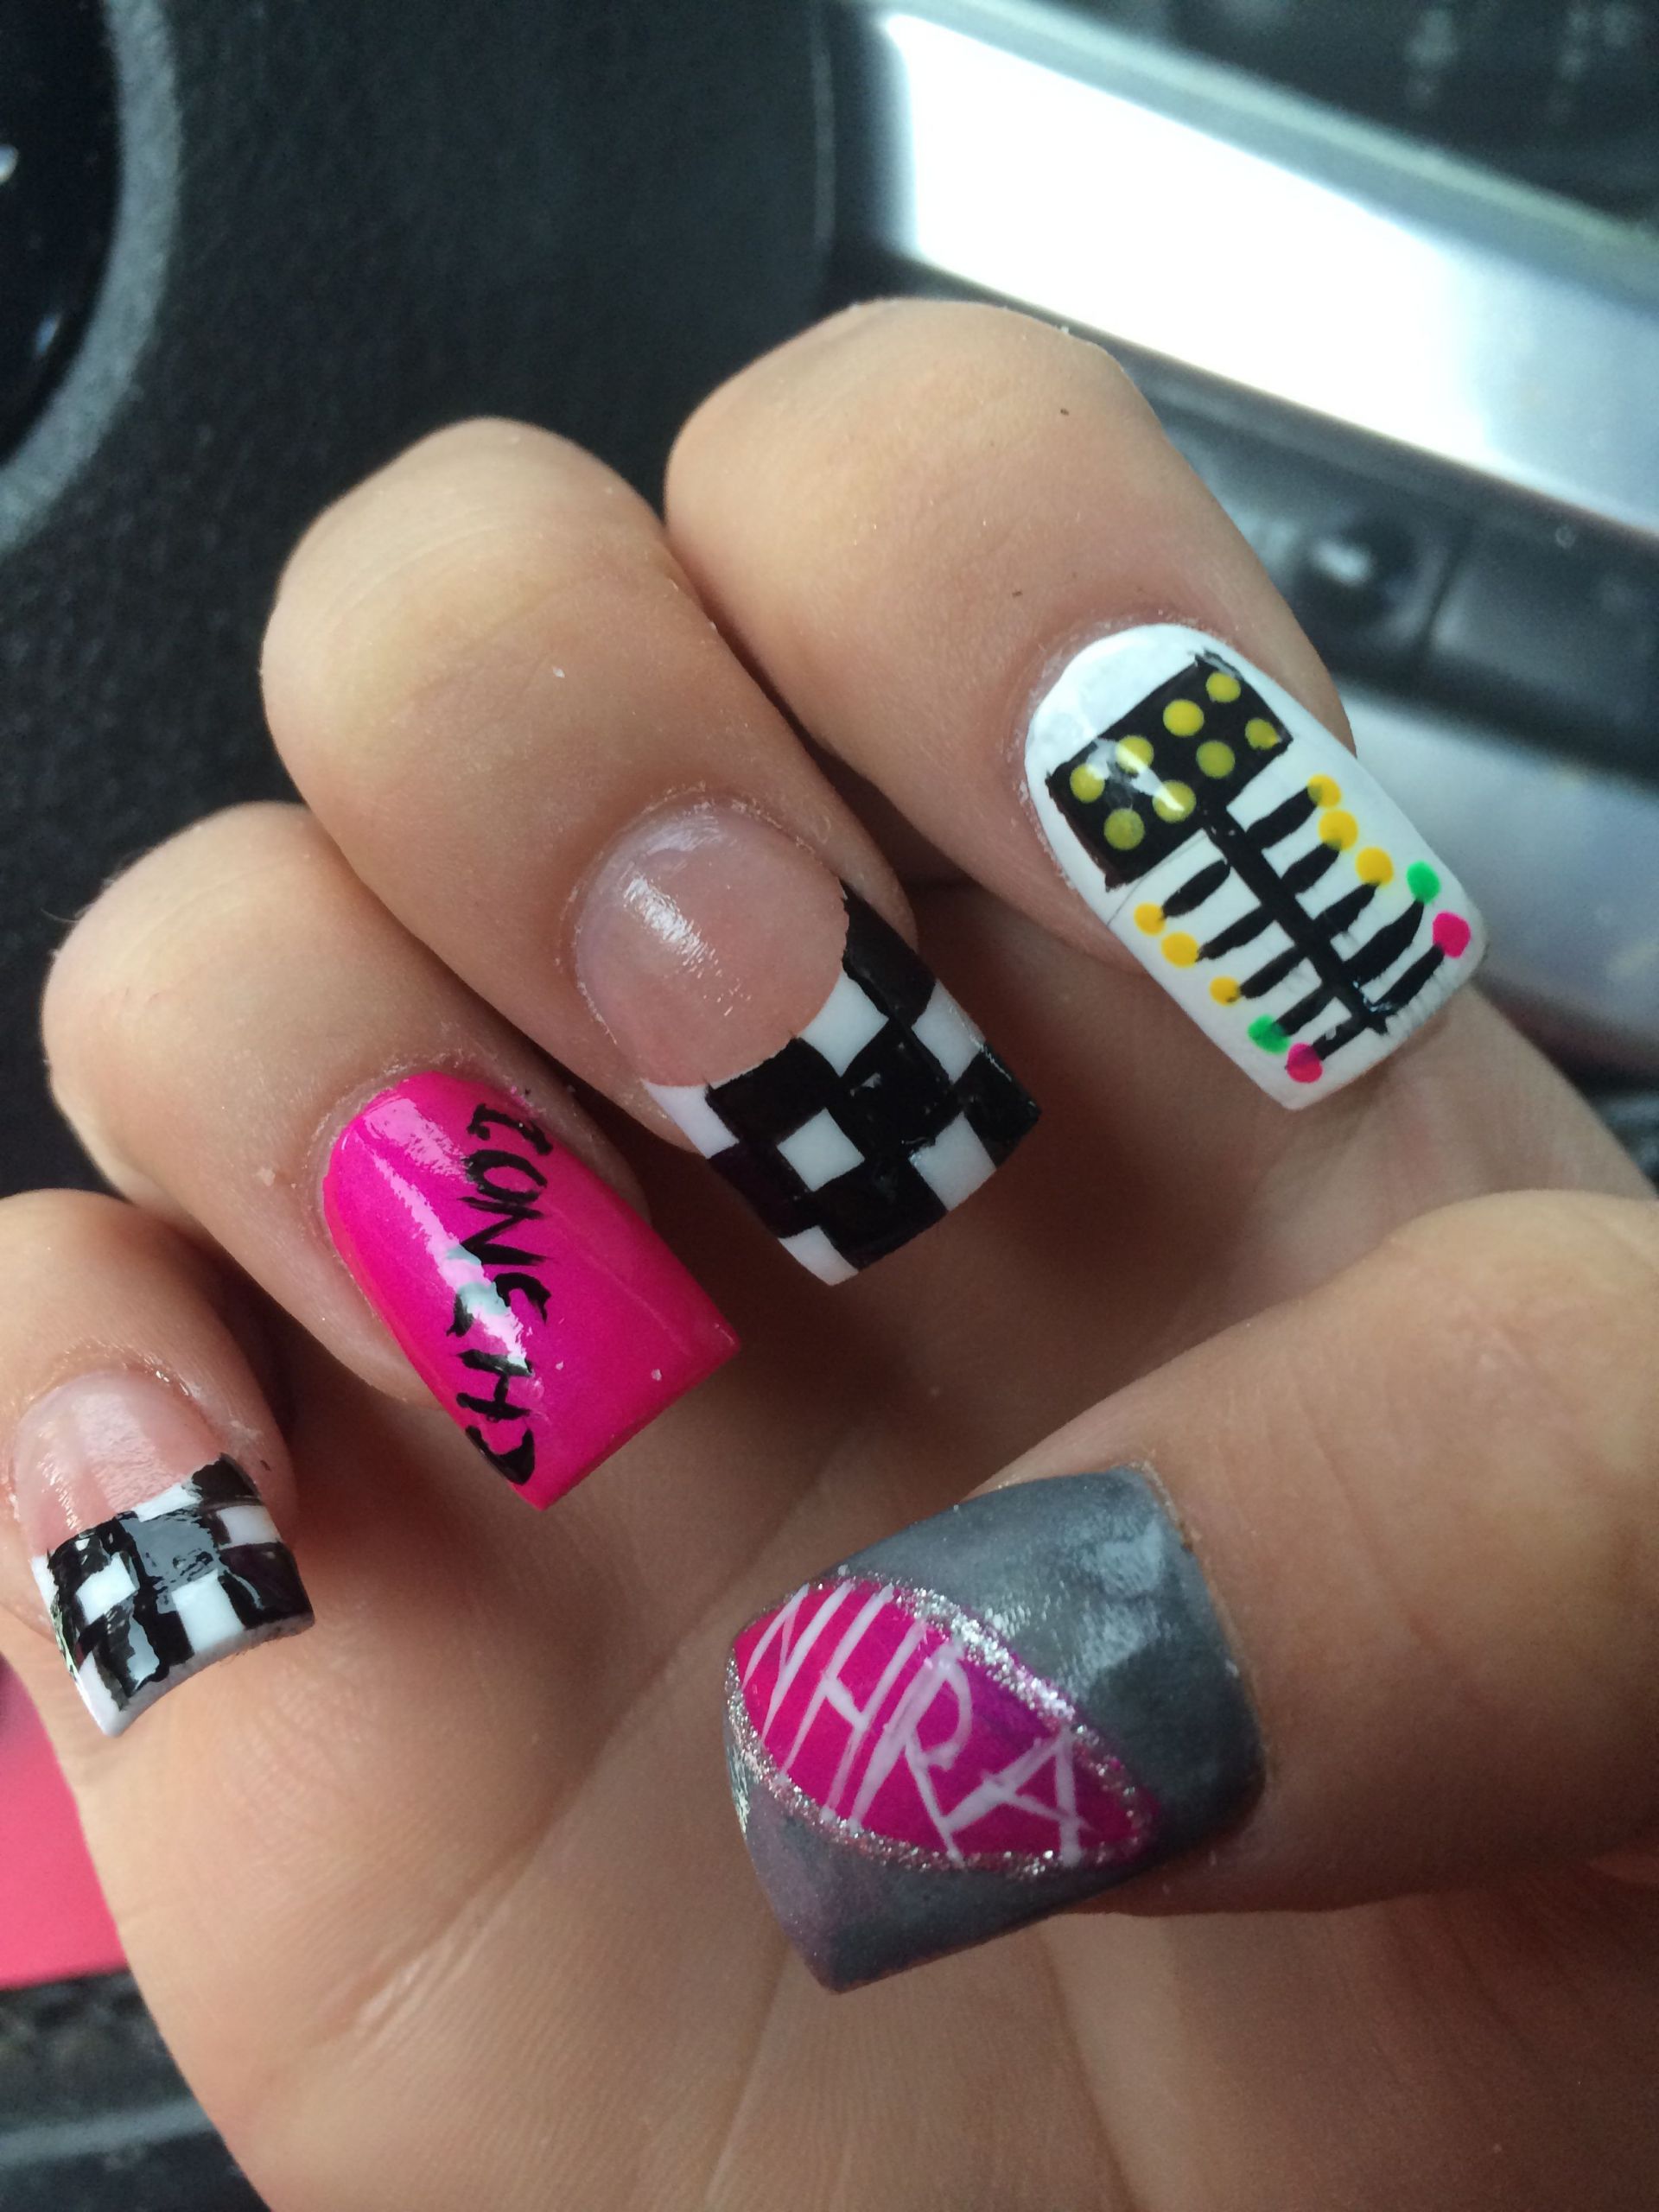 Chevy Nail Designs
 NHRA drag racing nails I want OMG